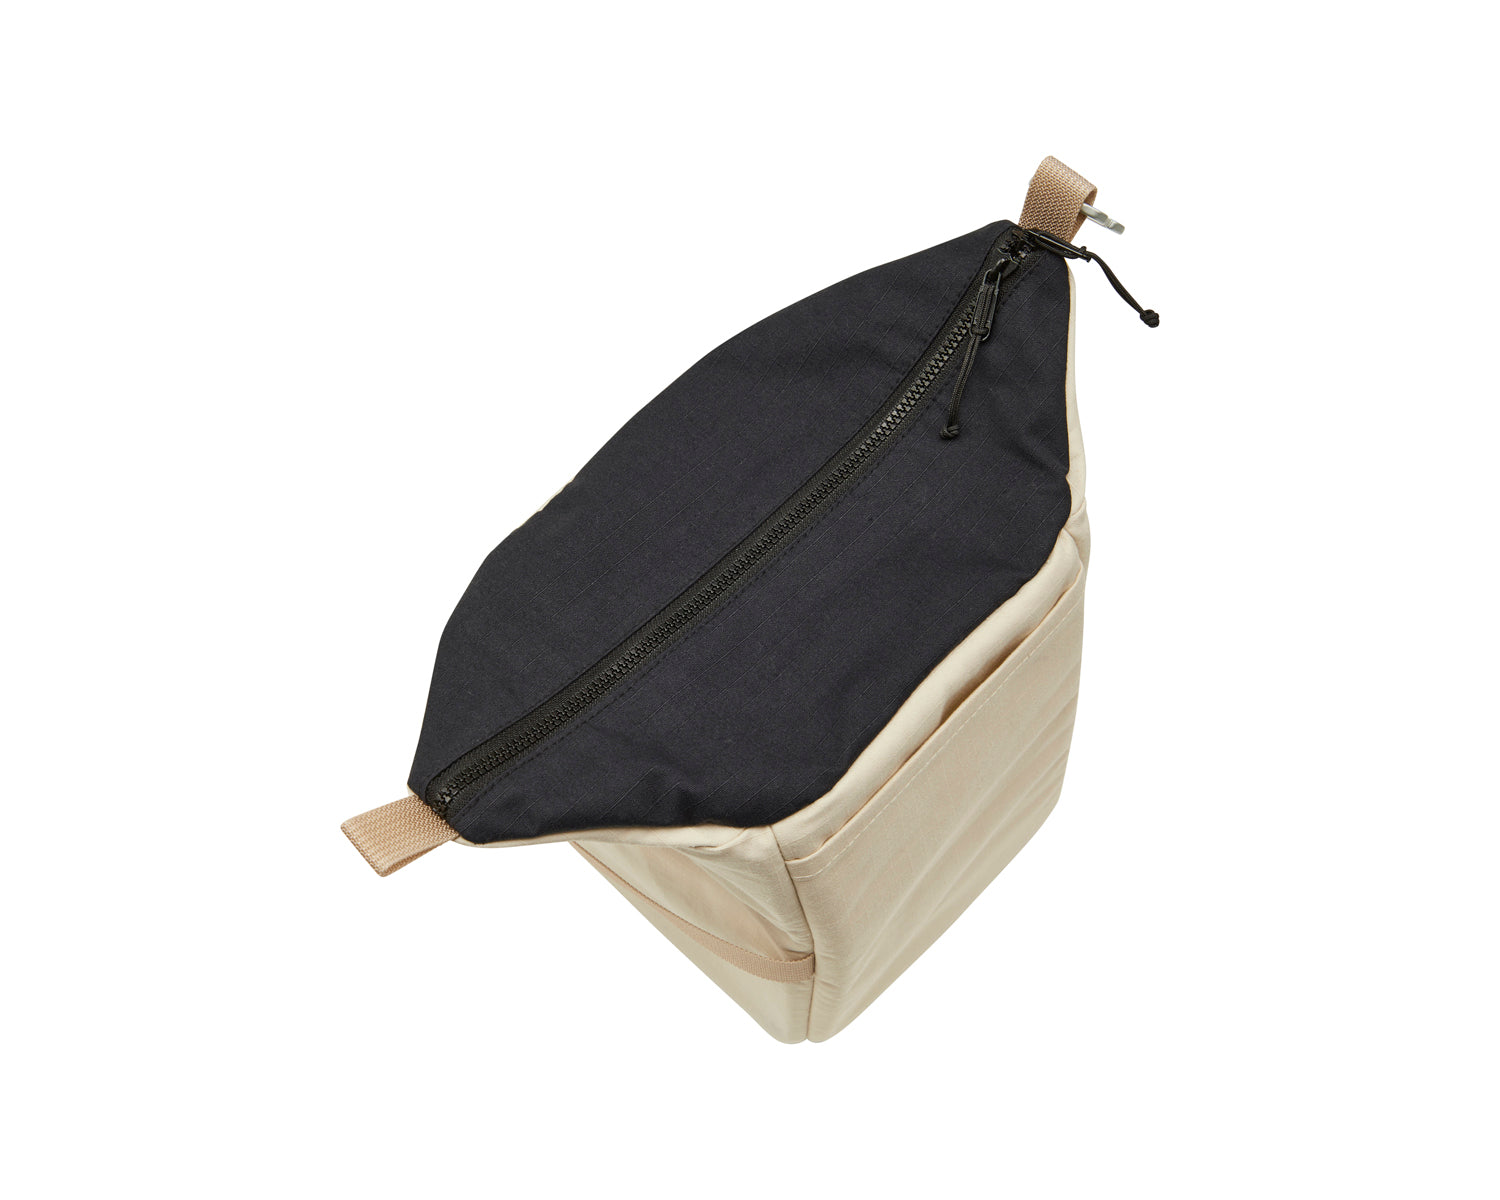 Gjern boxy bag - High - High - Sandshell